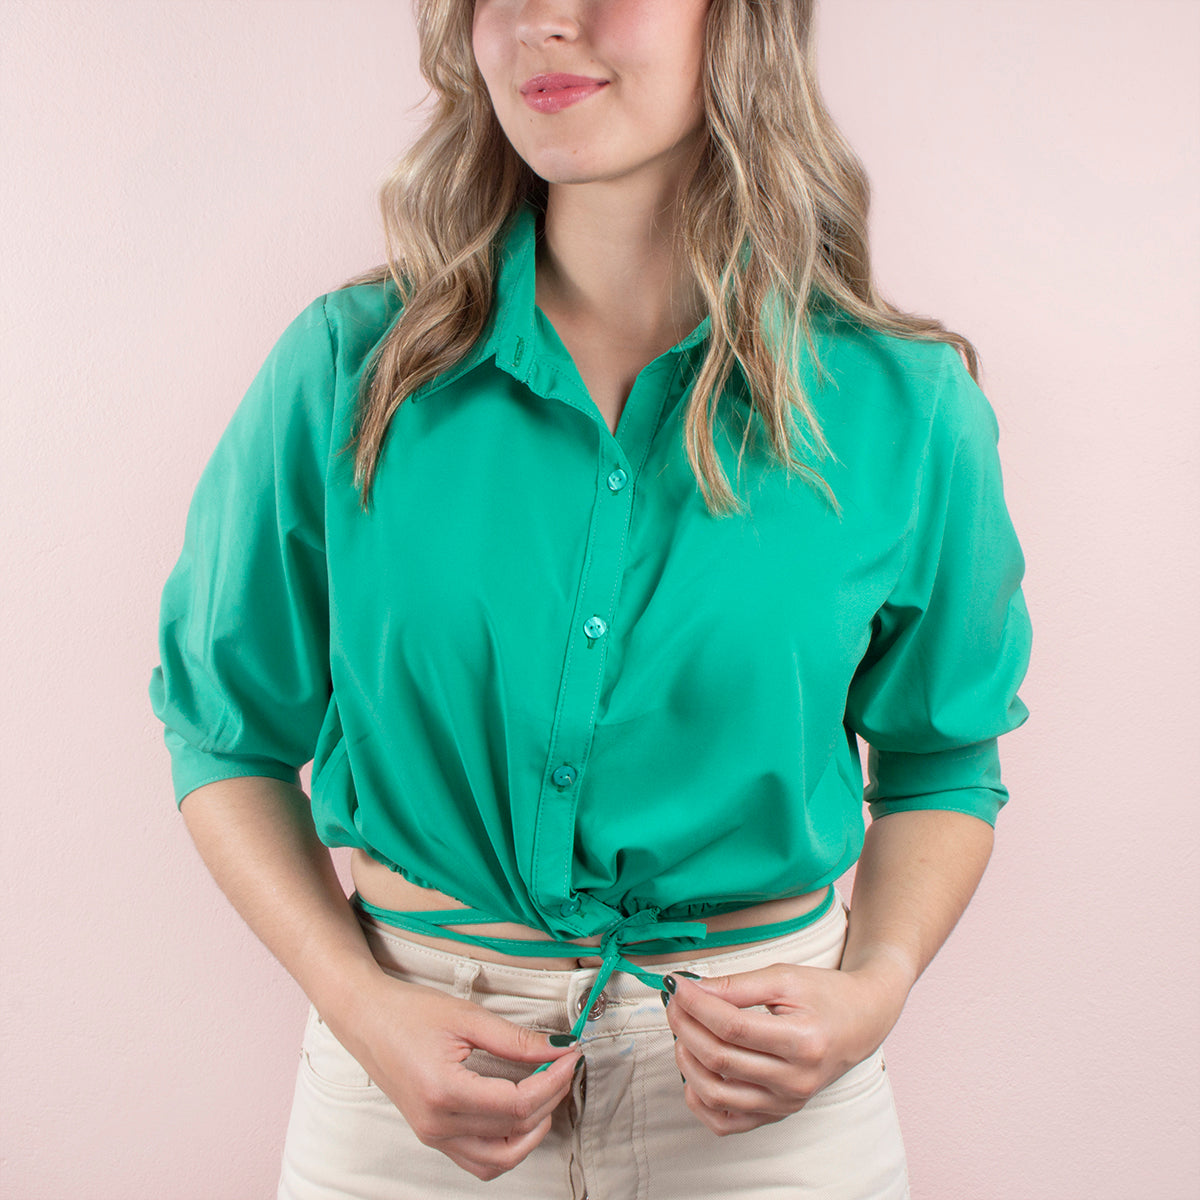 Blusa corta color verde con moño en abdomen